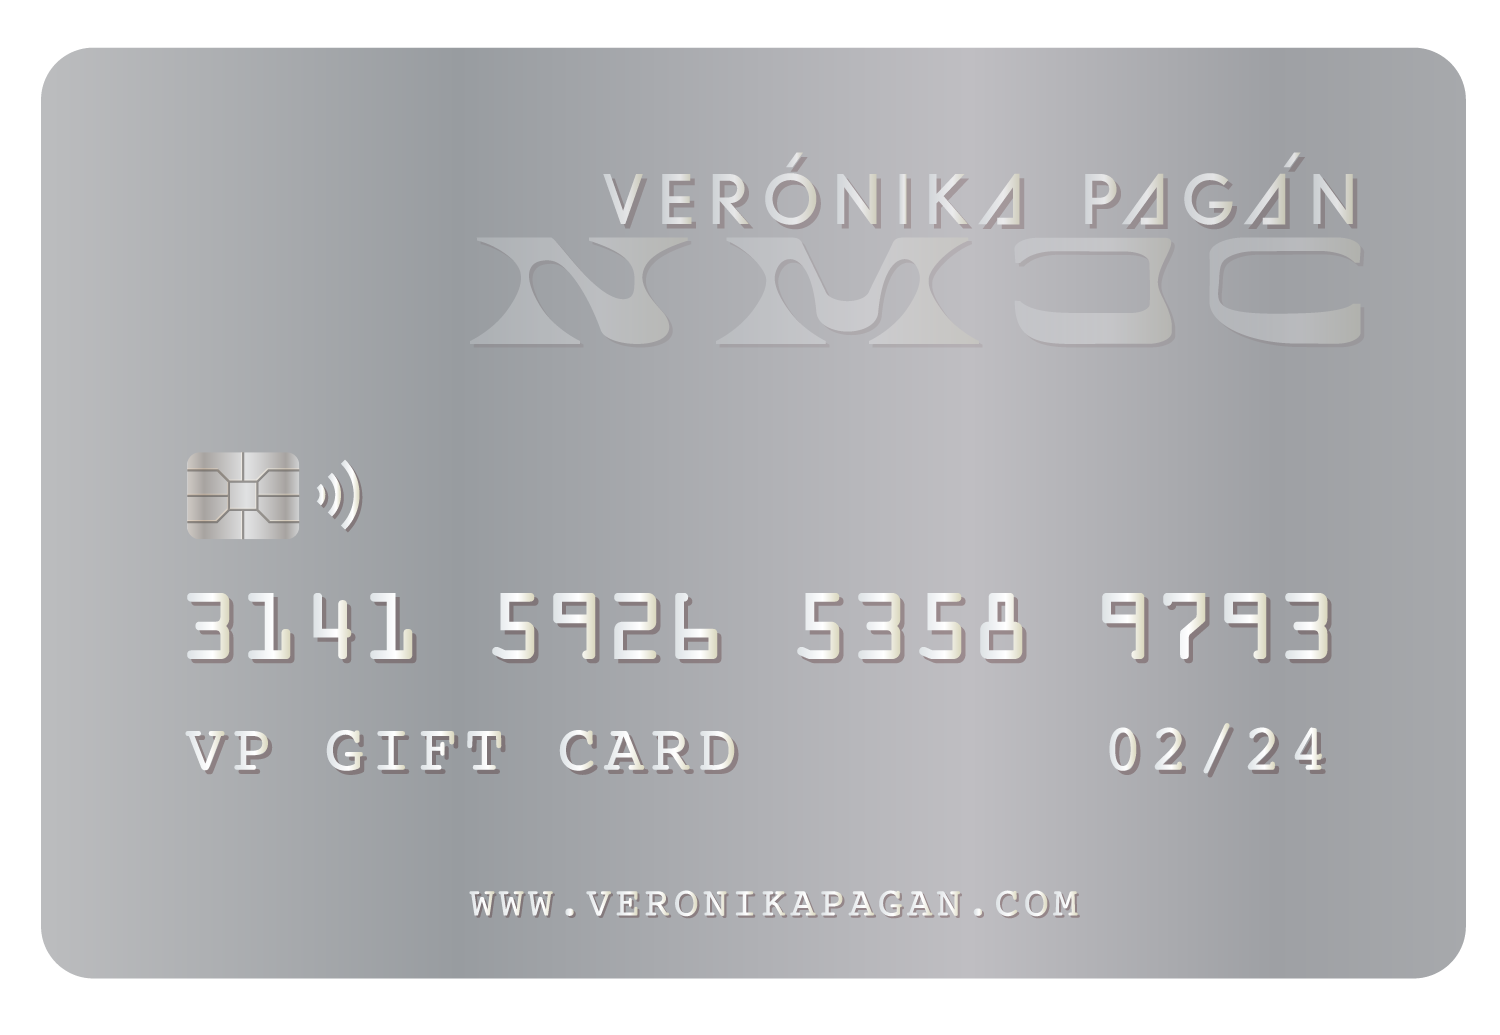 VP GIFT CARD